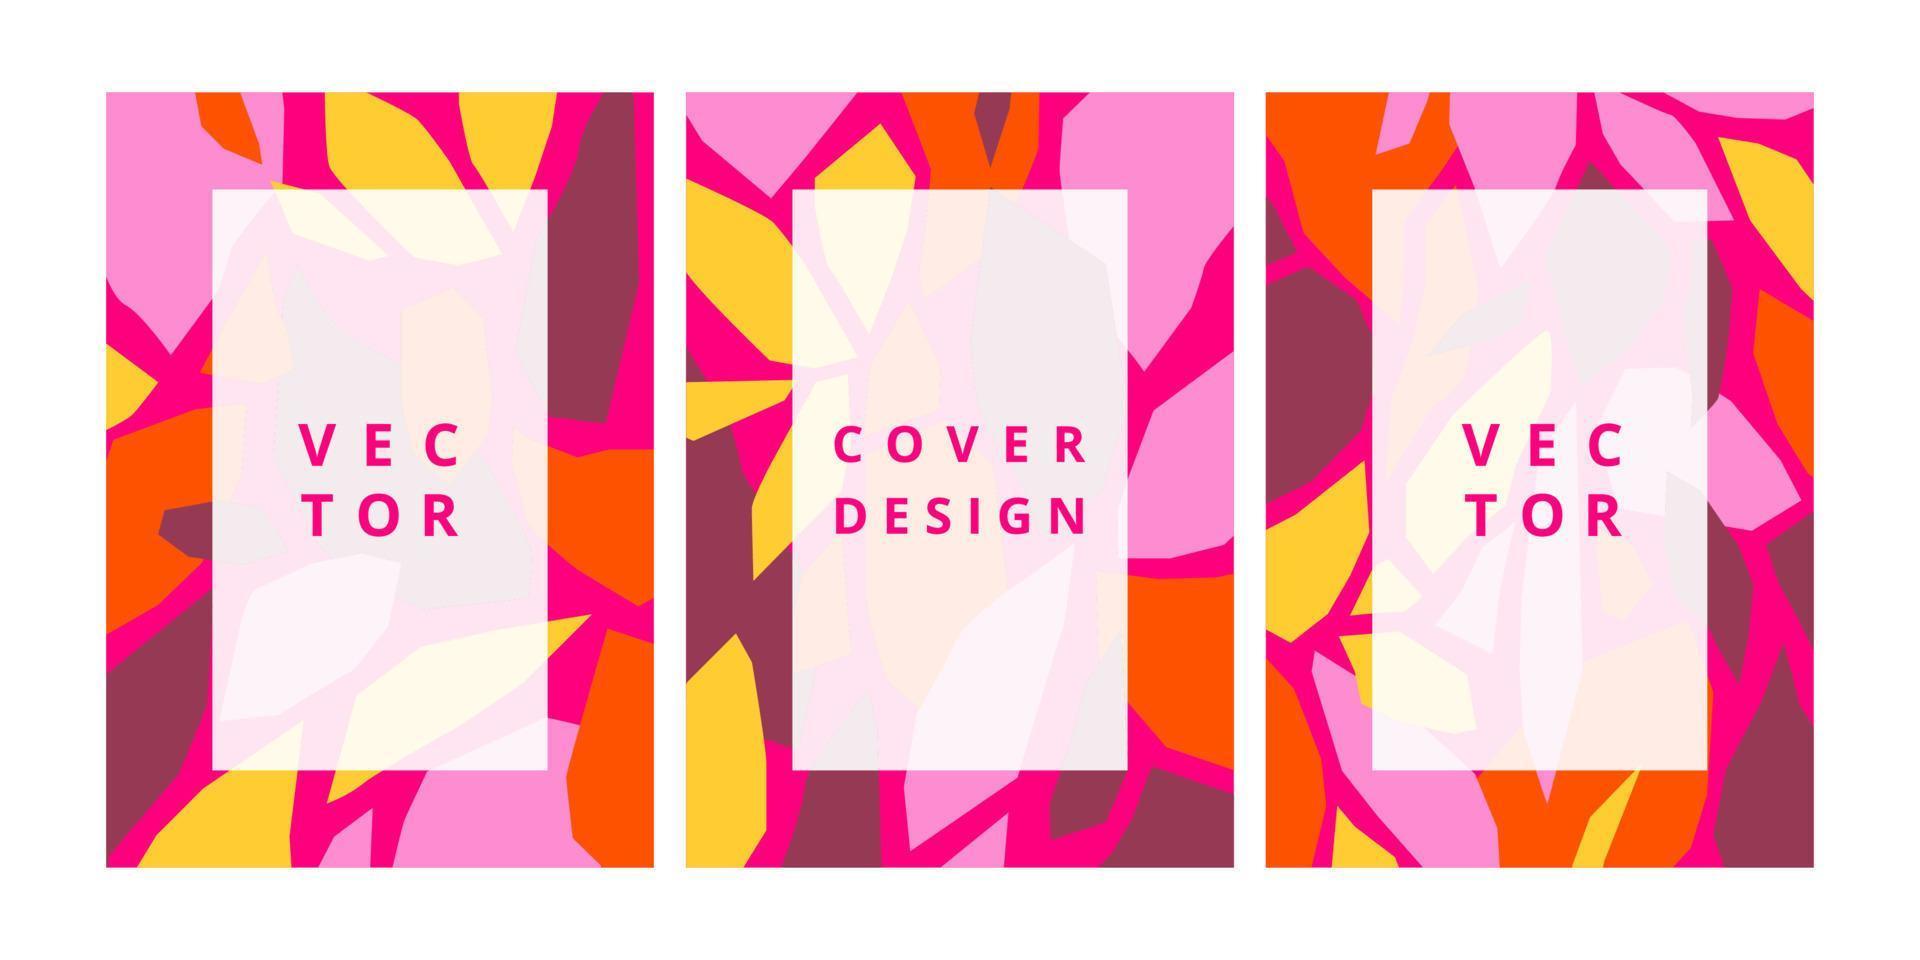 conjunto de plantillas de diseño moderno con formas geométricas rosas en estilo escandinavo. fondo creativo simple para el diseño de folletos, volantes, pancartas, carteles y marcas. ilustración vectorial abstracta vector